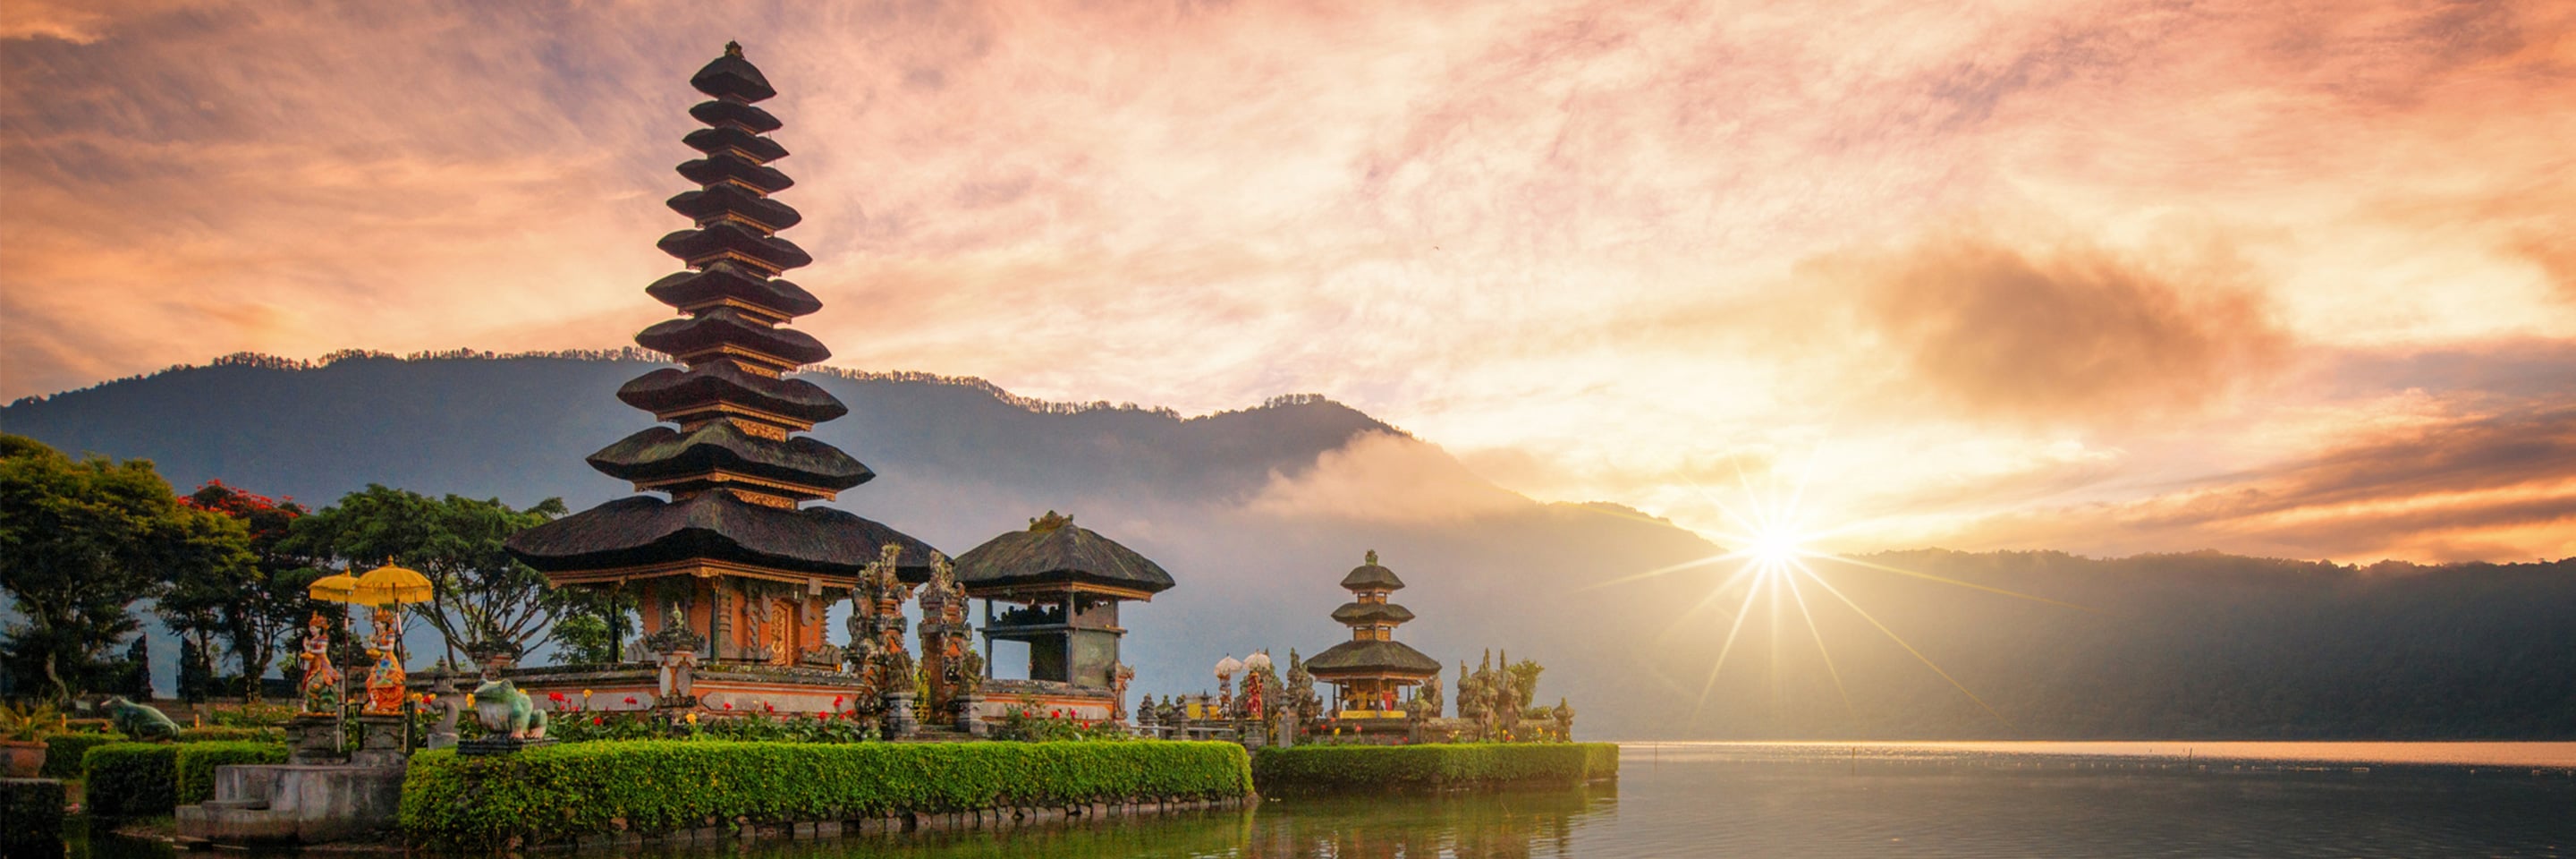 Hôtels à Bali